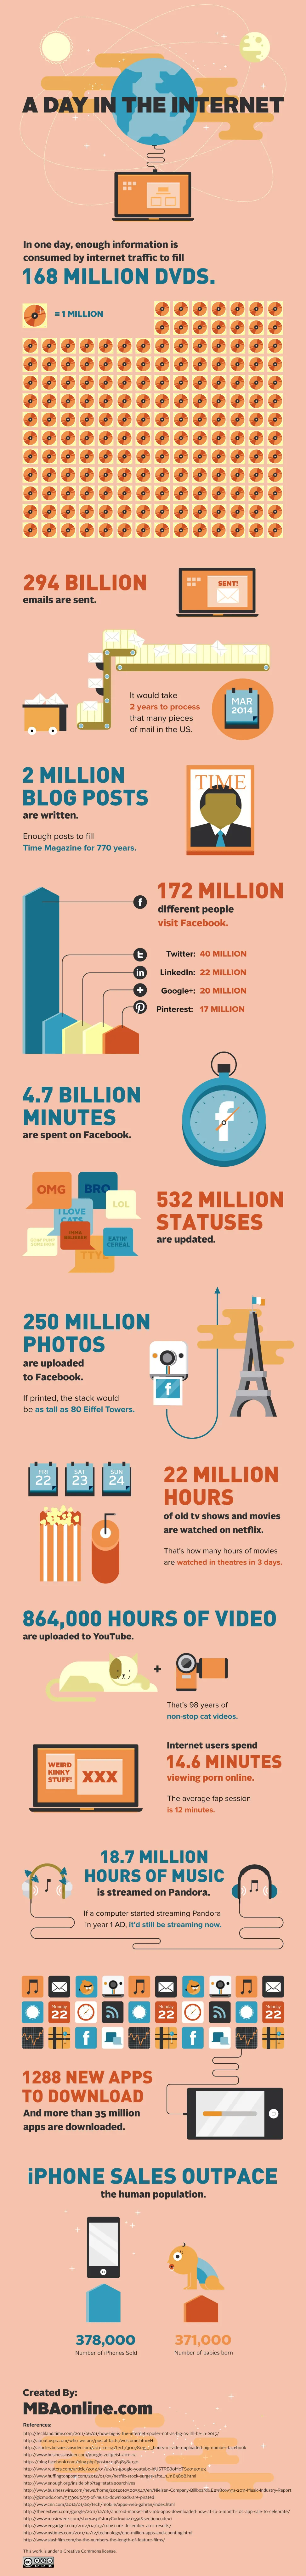 Τα νούμερα του Internet για 1 μέρα (infographic)